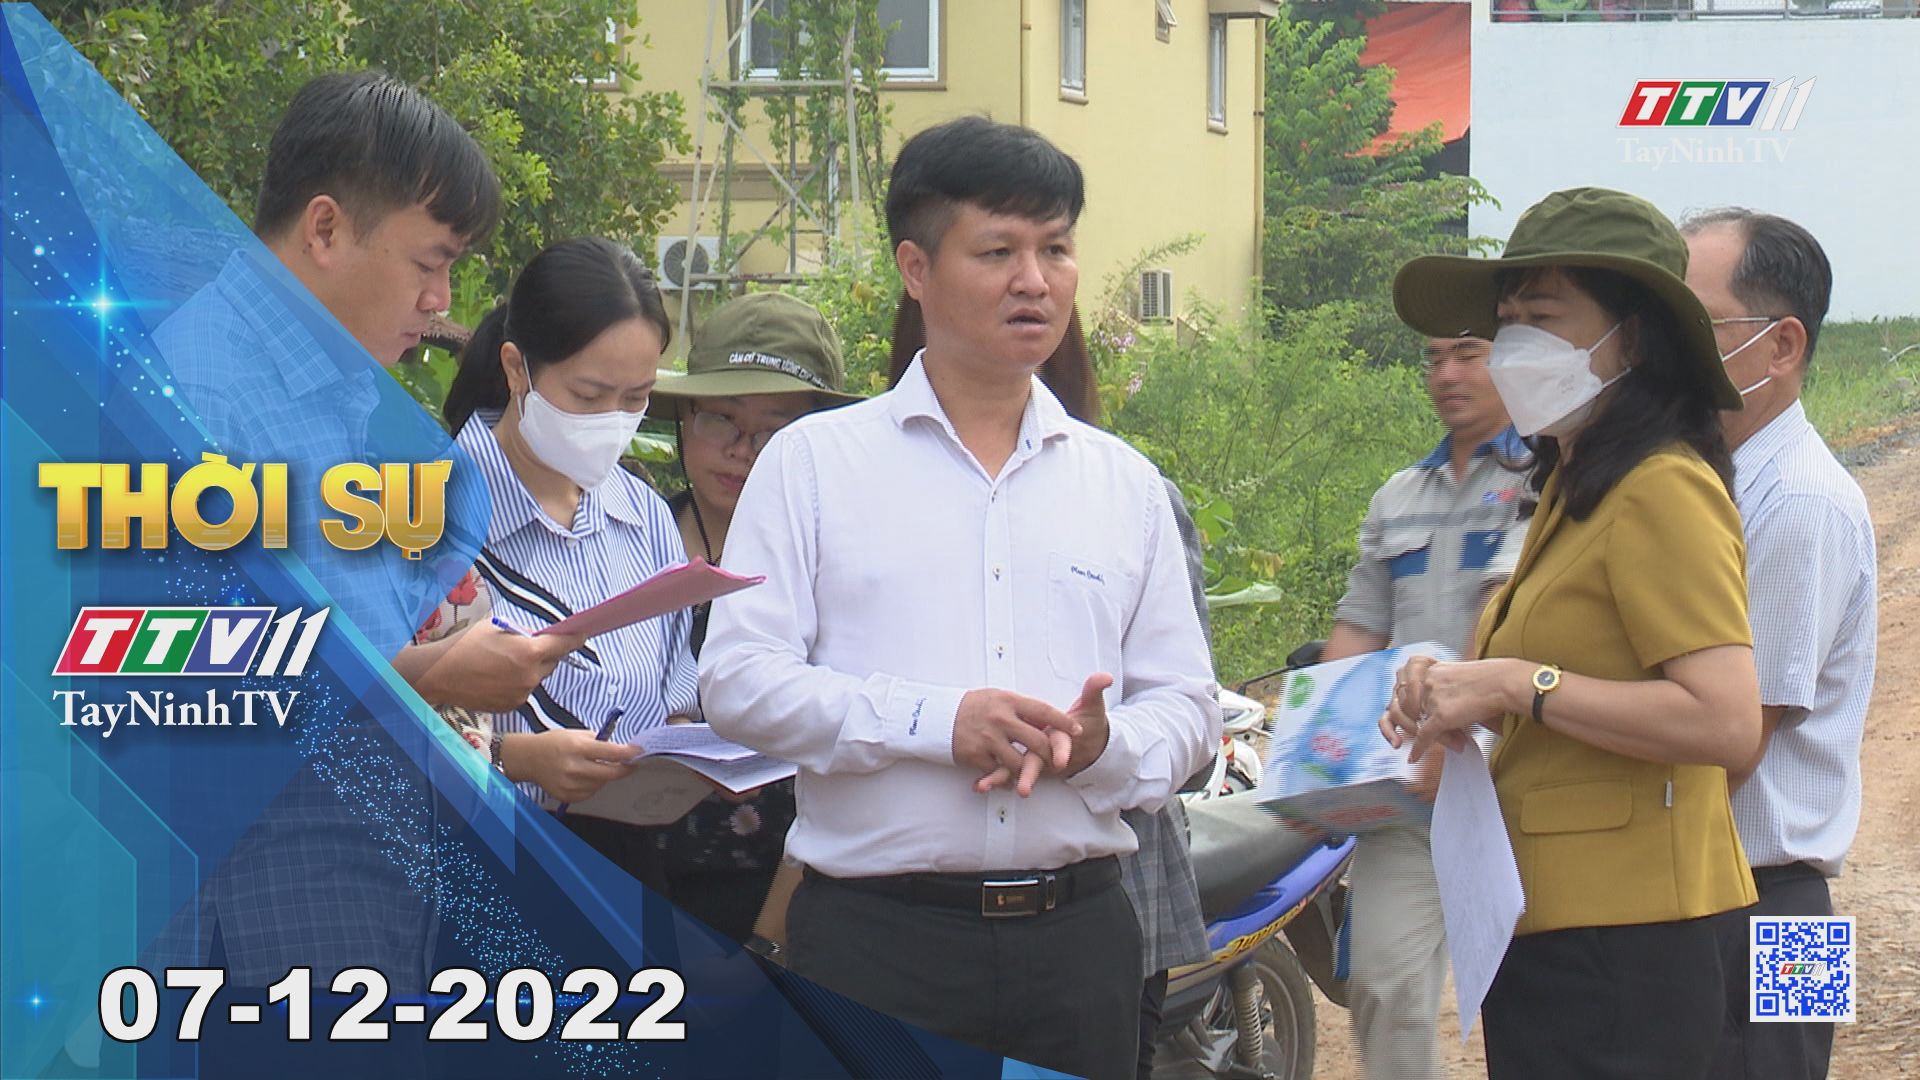 Thời sự Tây Ninh 07-12- 2022 | Tin tức hôm nay | TayNinhTV